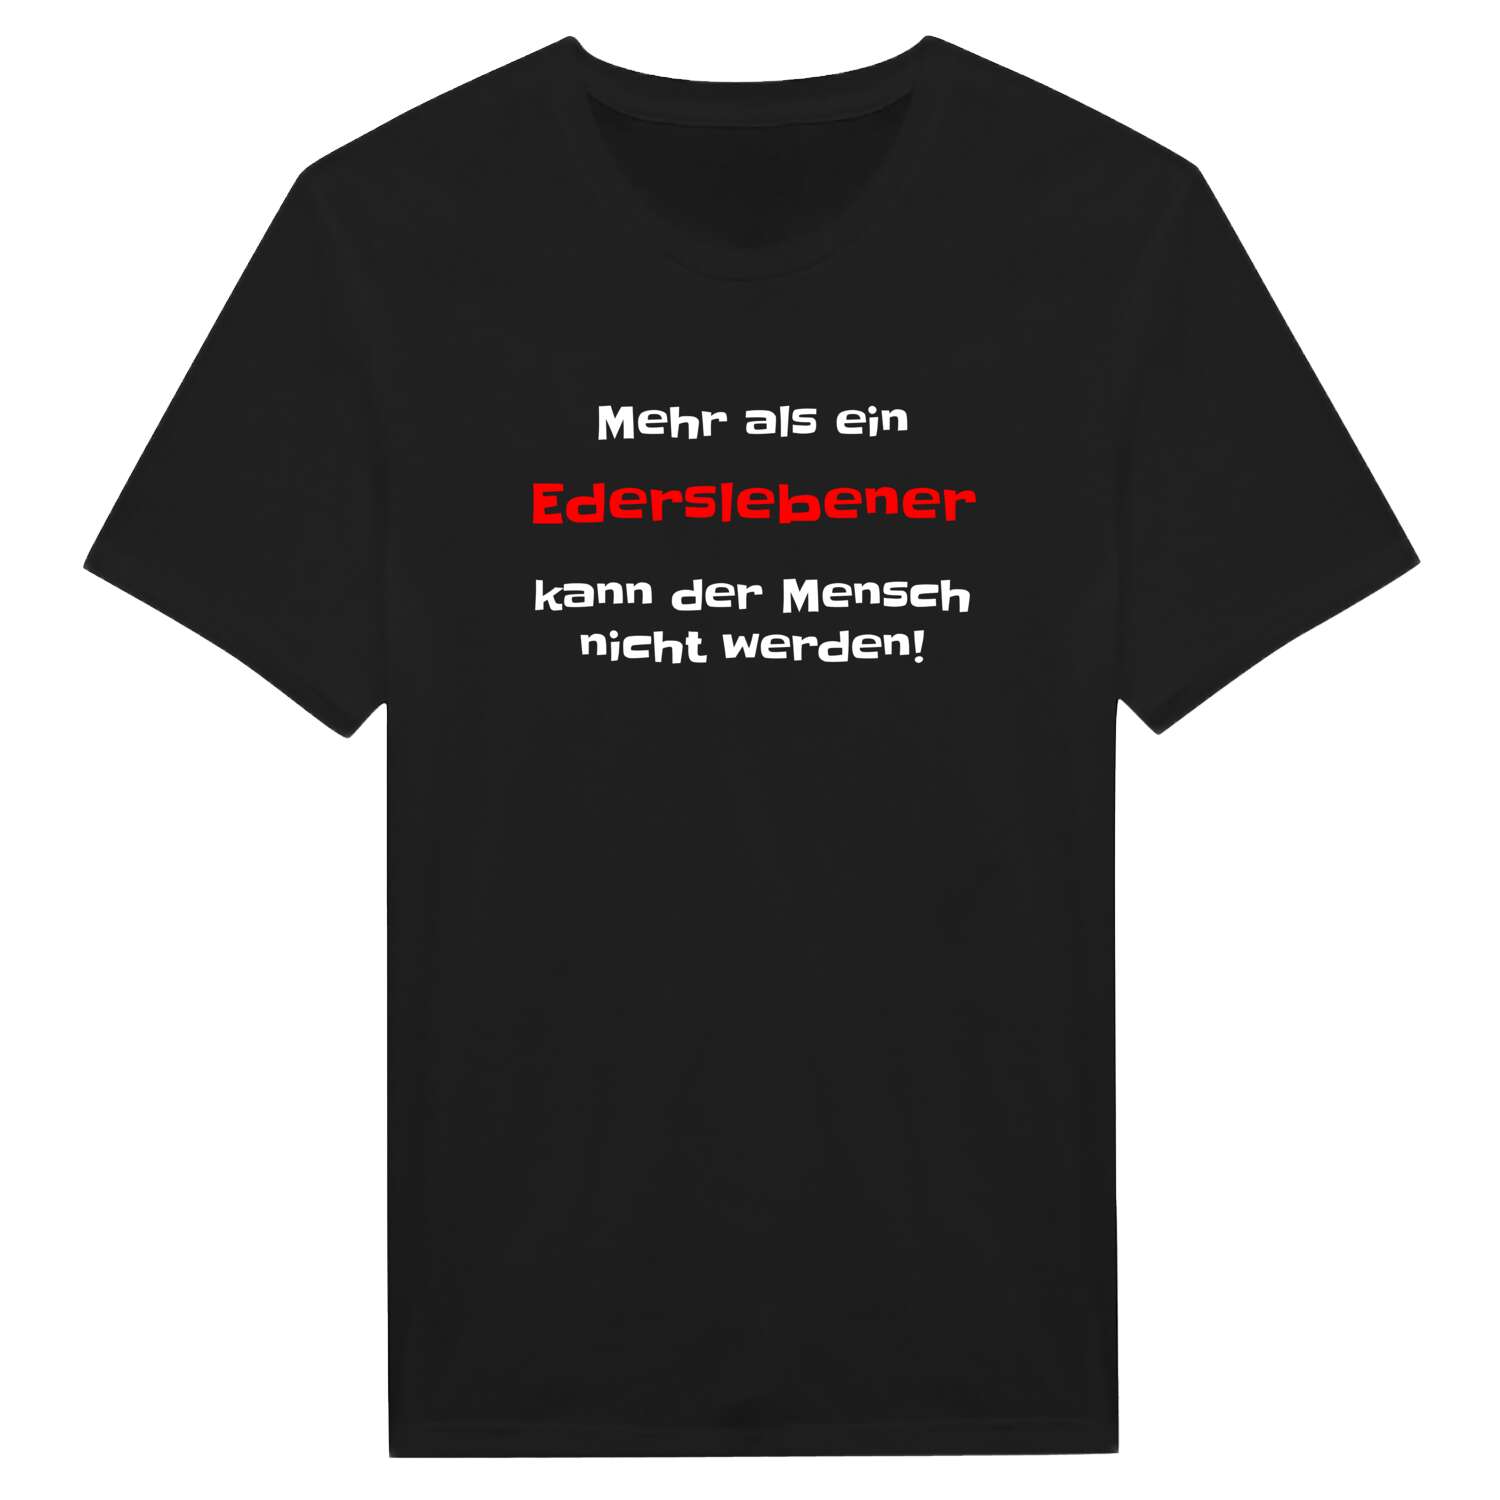 Edersleben T-Shirt »Mehr als ein«